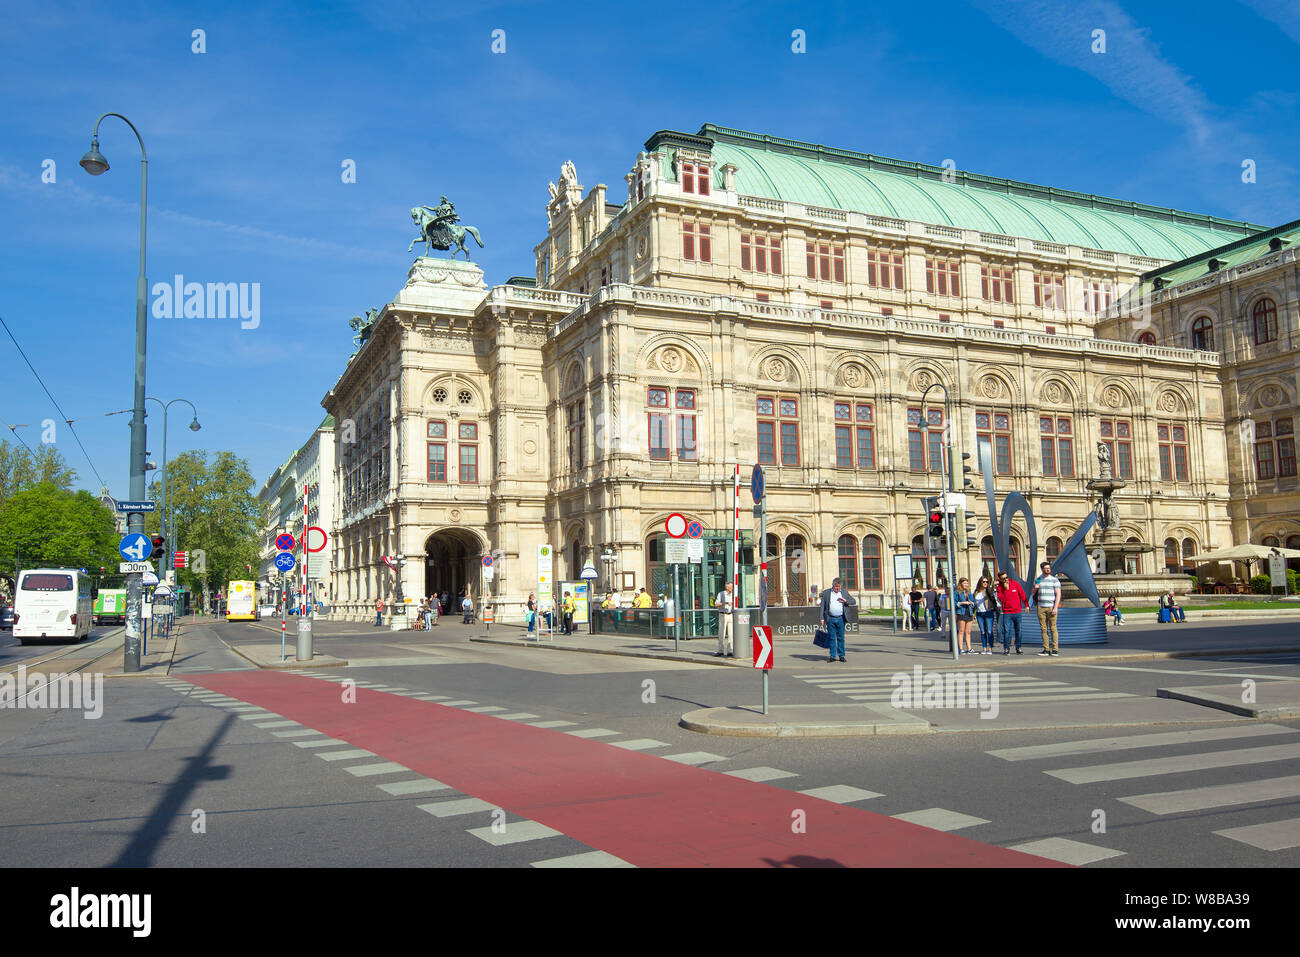 Vienne, Autriche - 25 avril 2018 : à l'Opéra de Vienne en s'appuyant sur une journée ensoleillée d'avril Banque D'Images